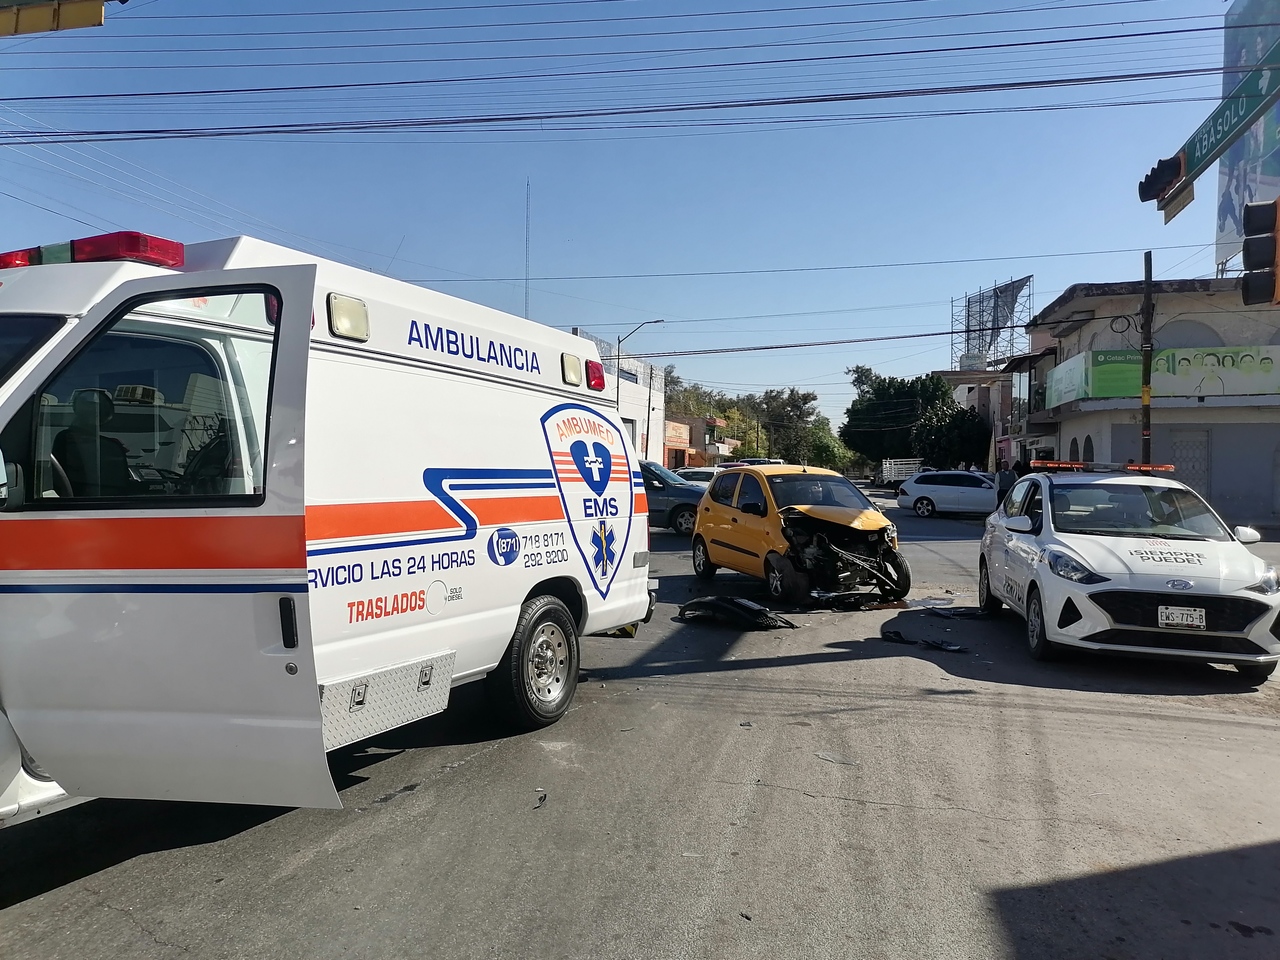 El vehículo particular circulaba con derecho de preferencia cuando una ambulancia se pasó el semáforo en rojo ante una emergencia.